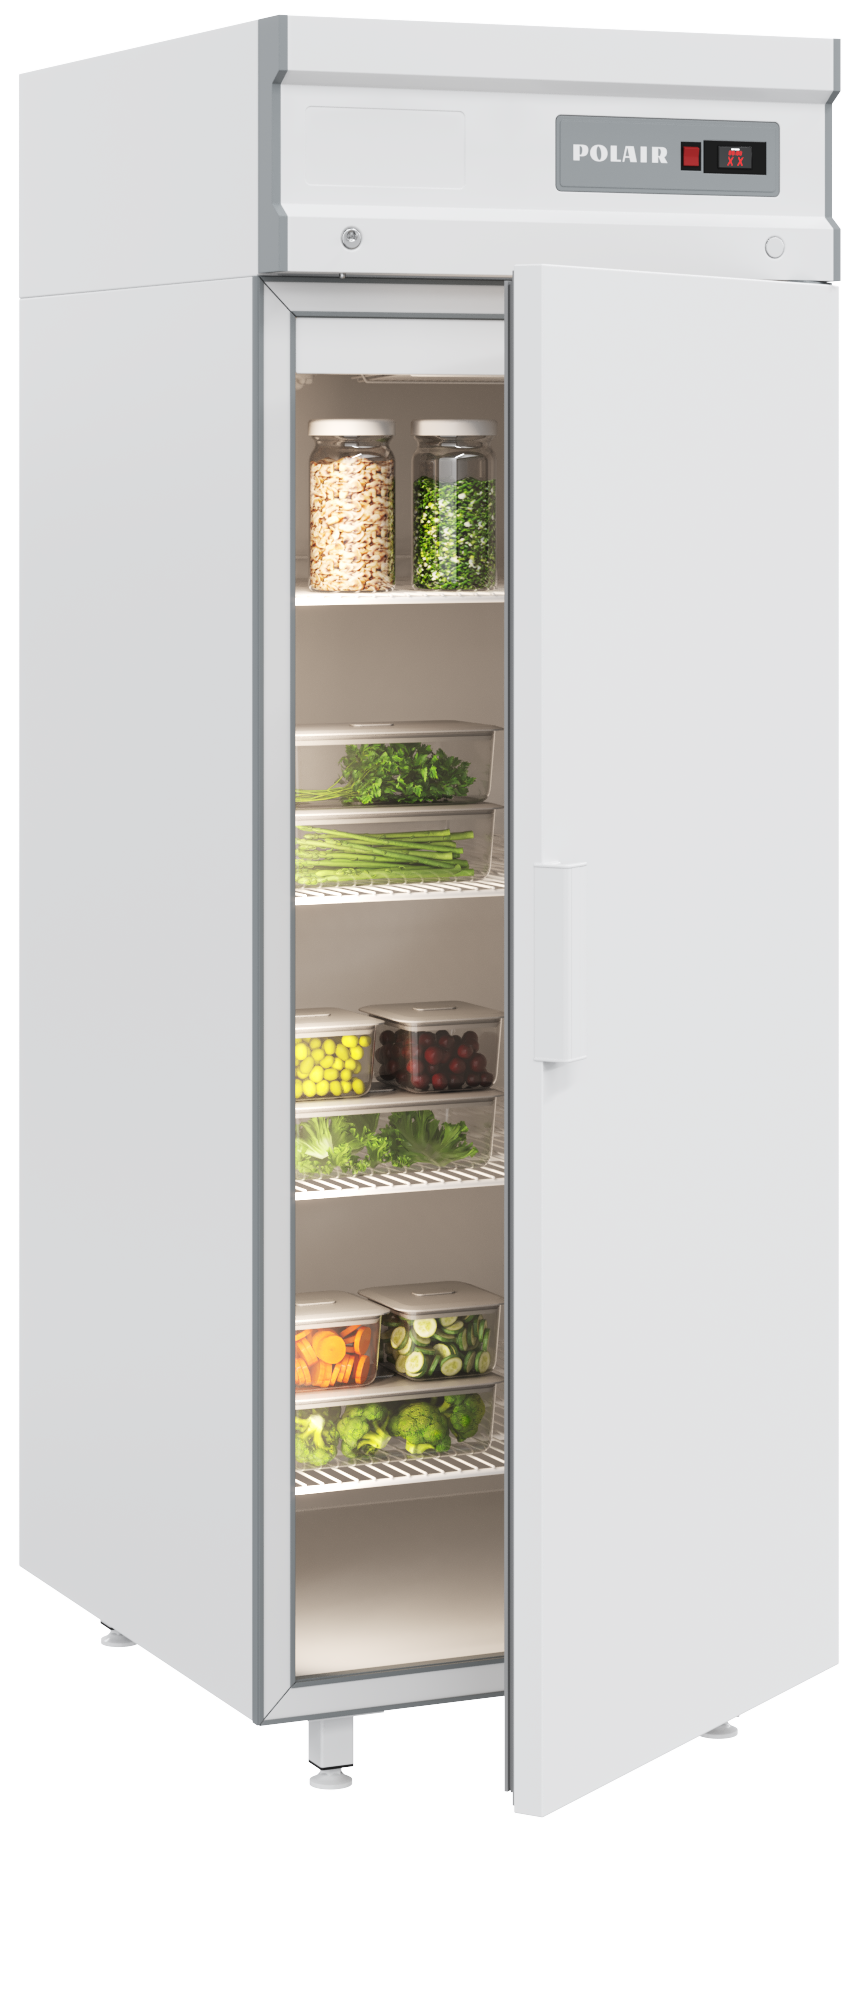 Холодильные шкафы Polair: преимущества и недостатки